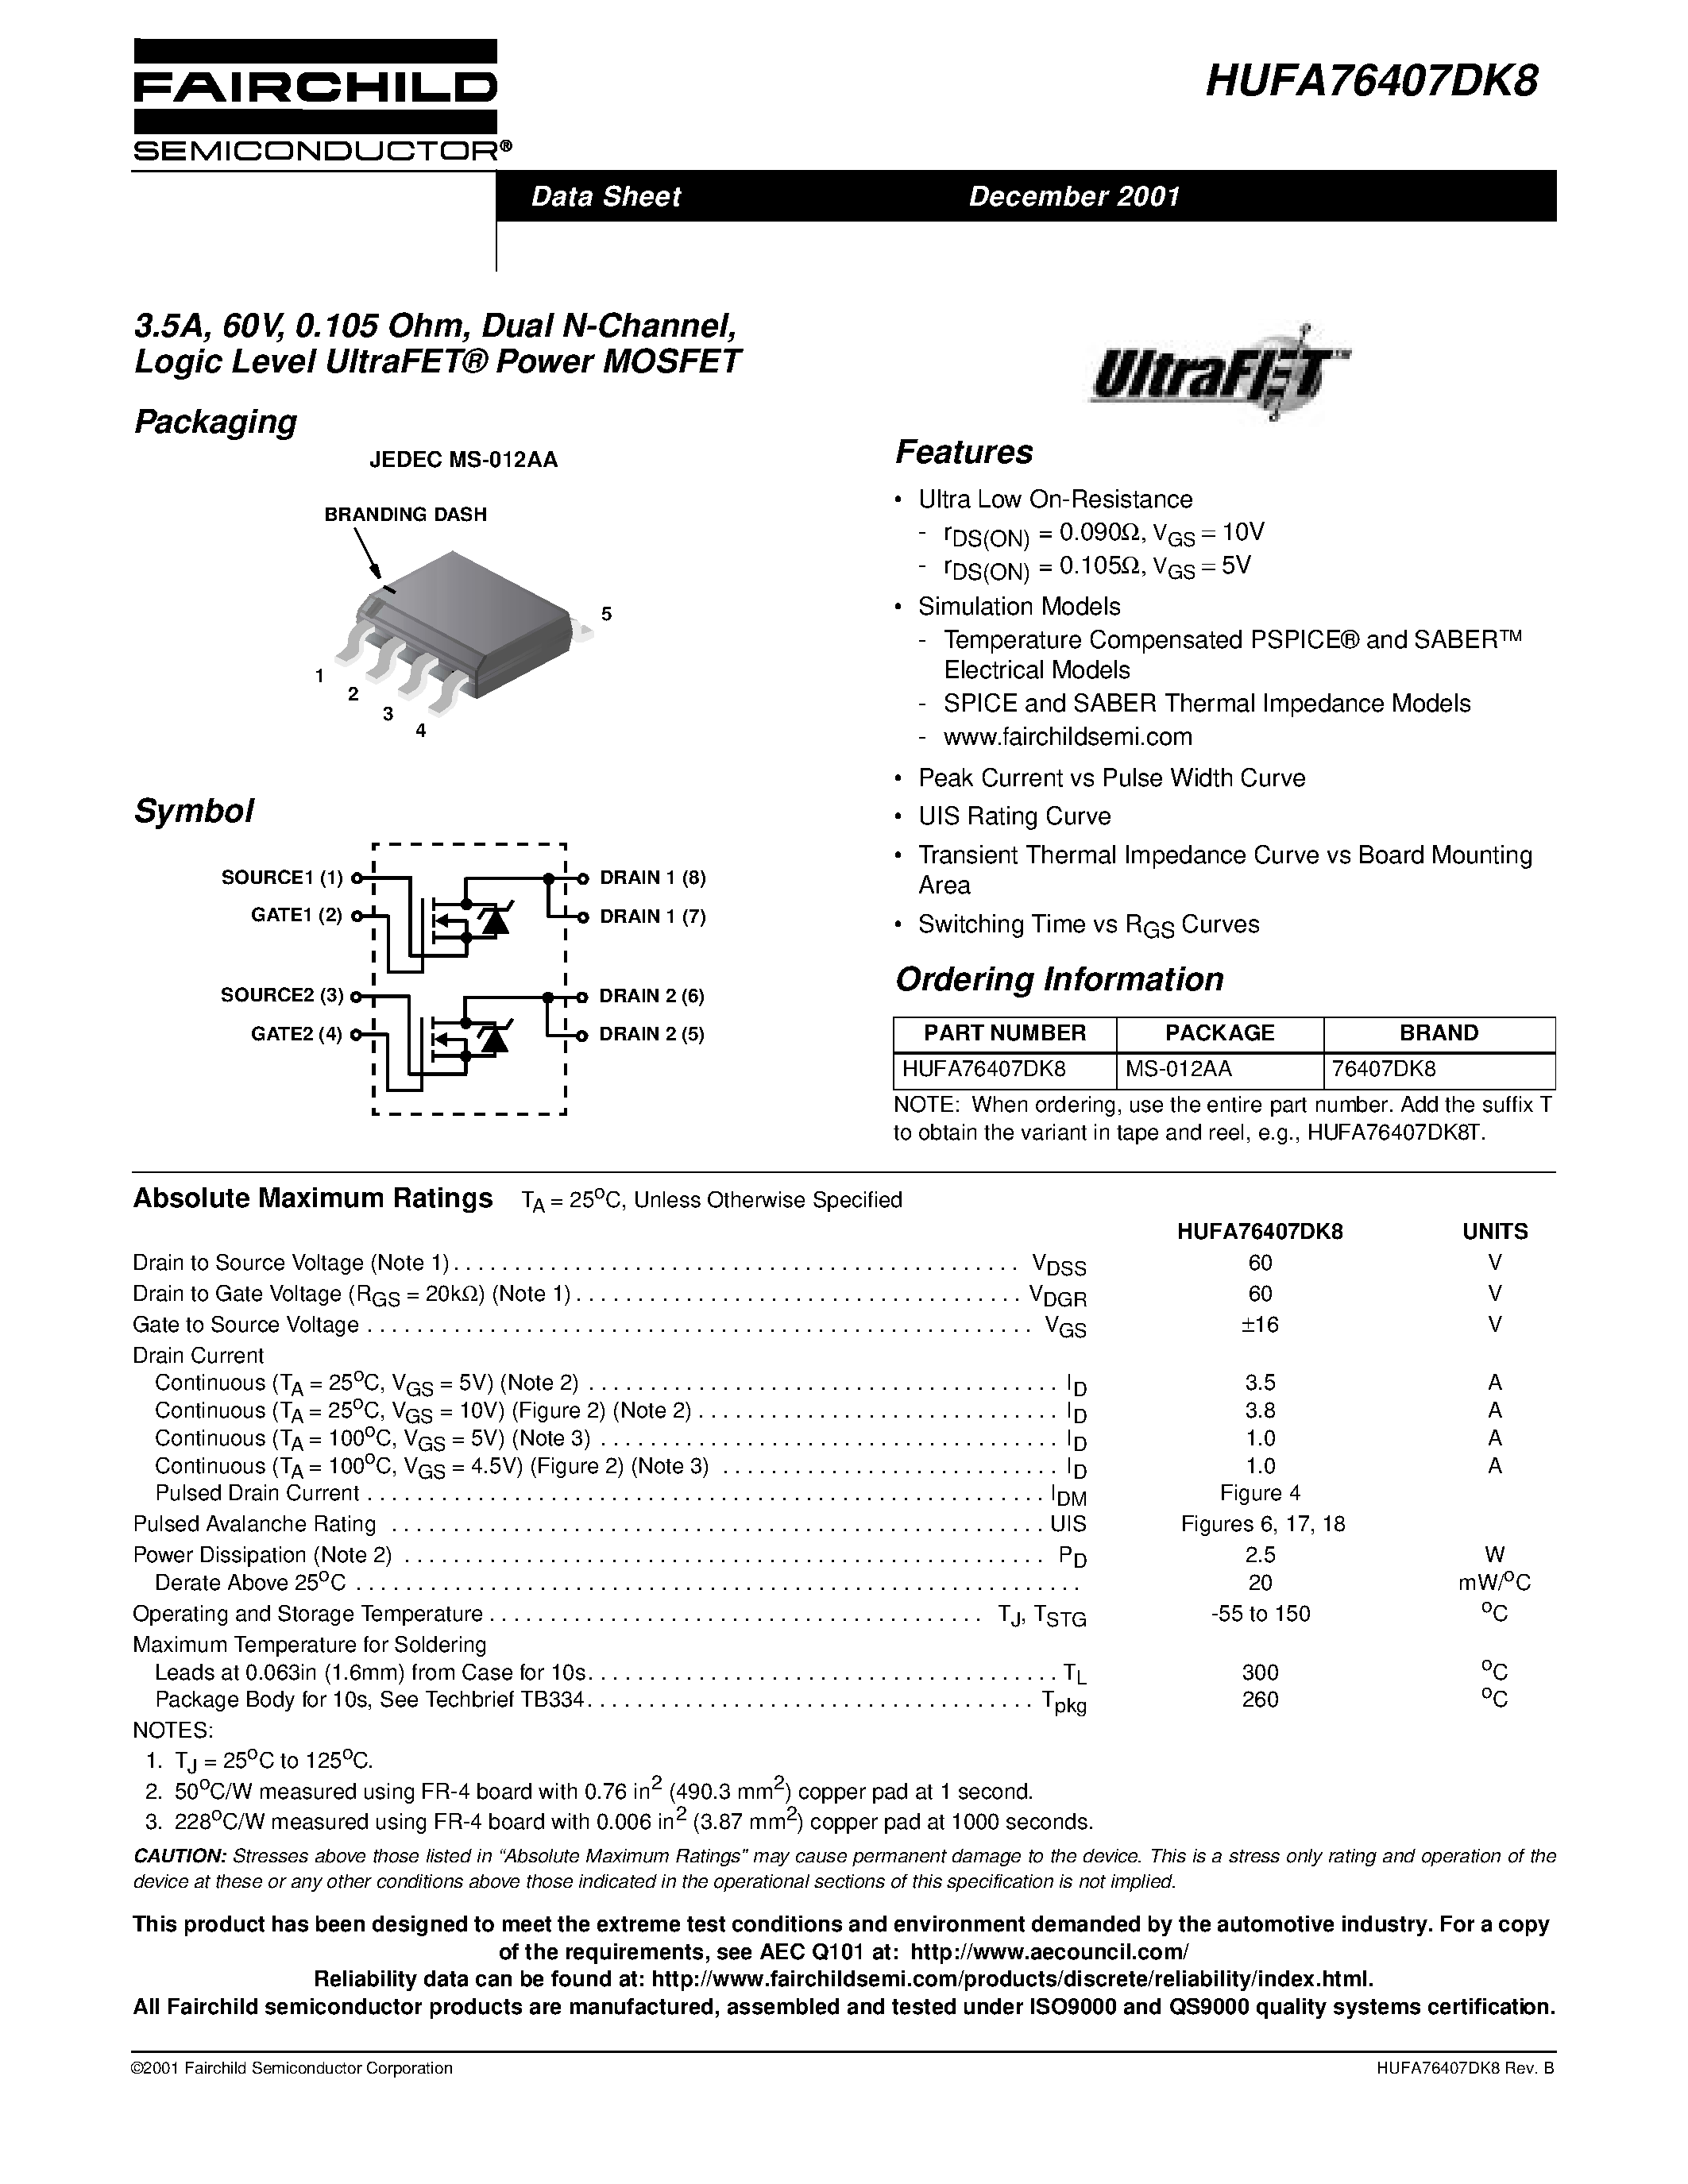 Даташит HUFA76407DK8 - 3.5A/ 60V/ 0.105 Ohm/ Dual N-Channel/ Logic Level UltraFET Power MOSFET страница 1